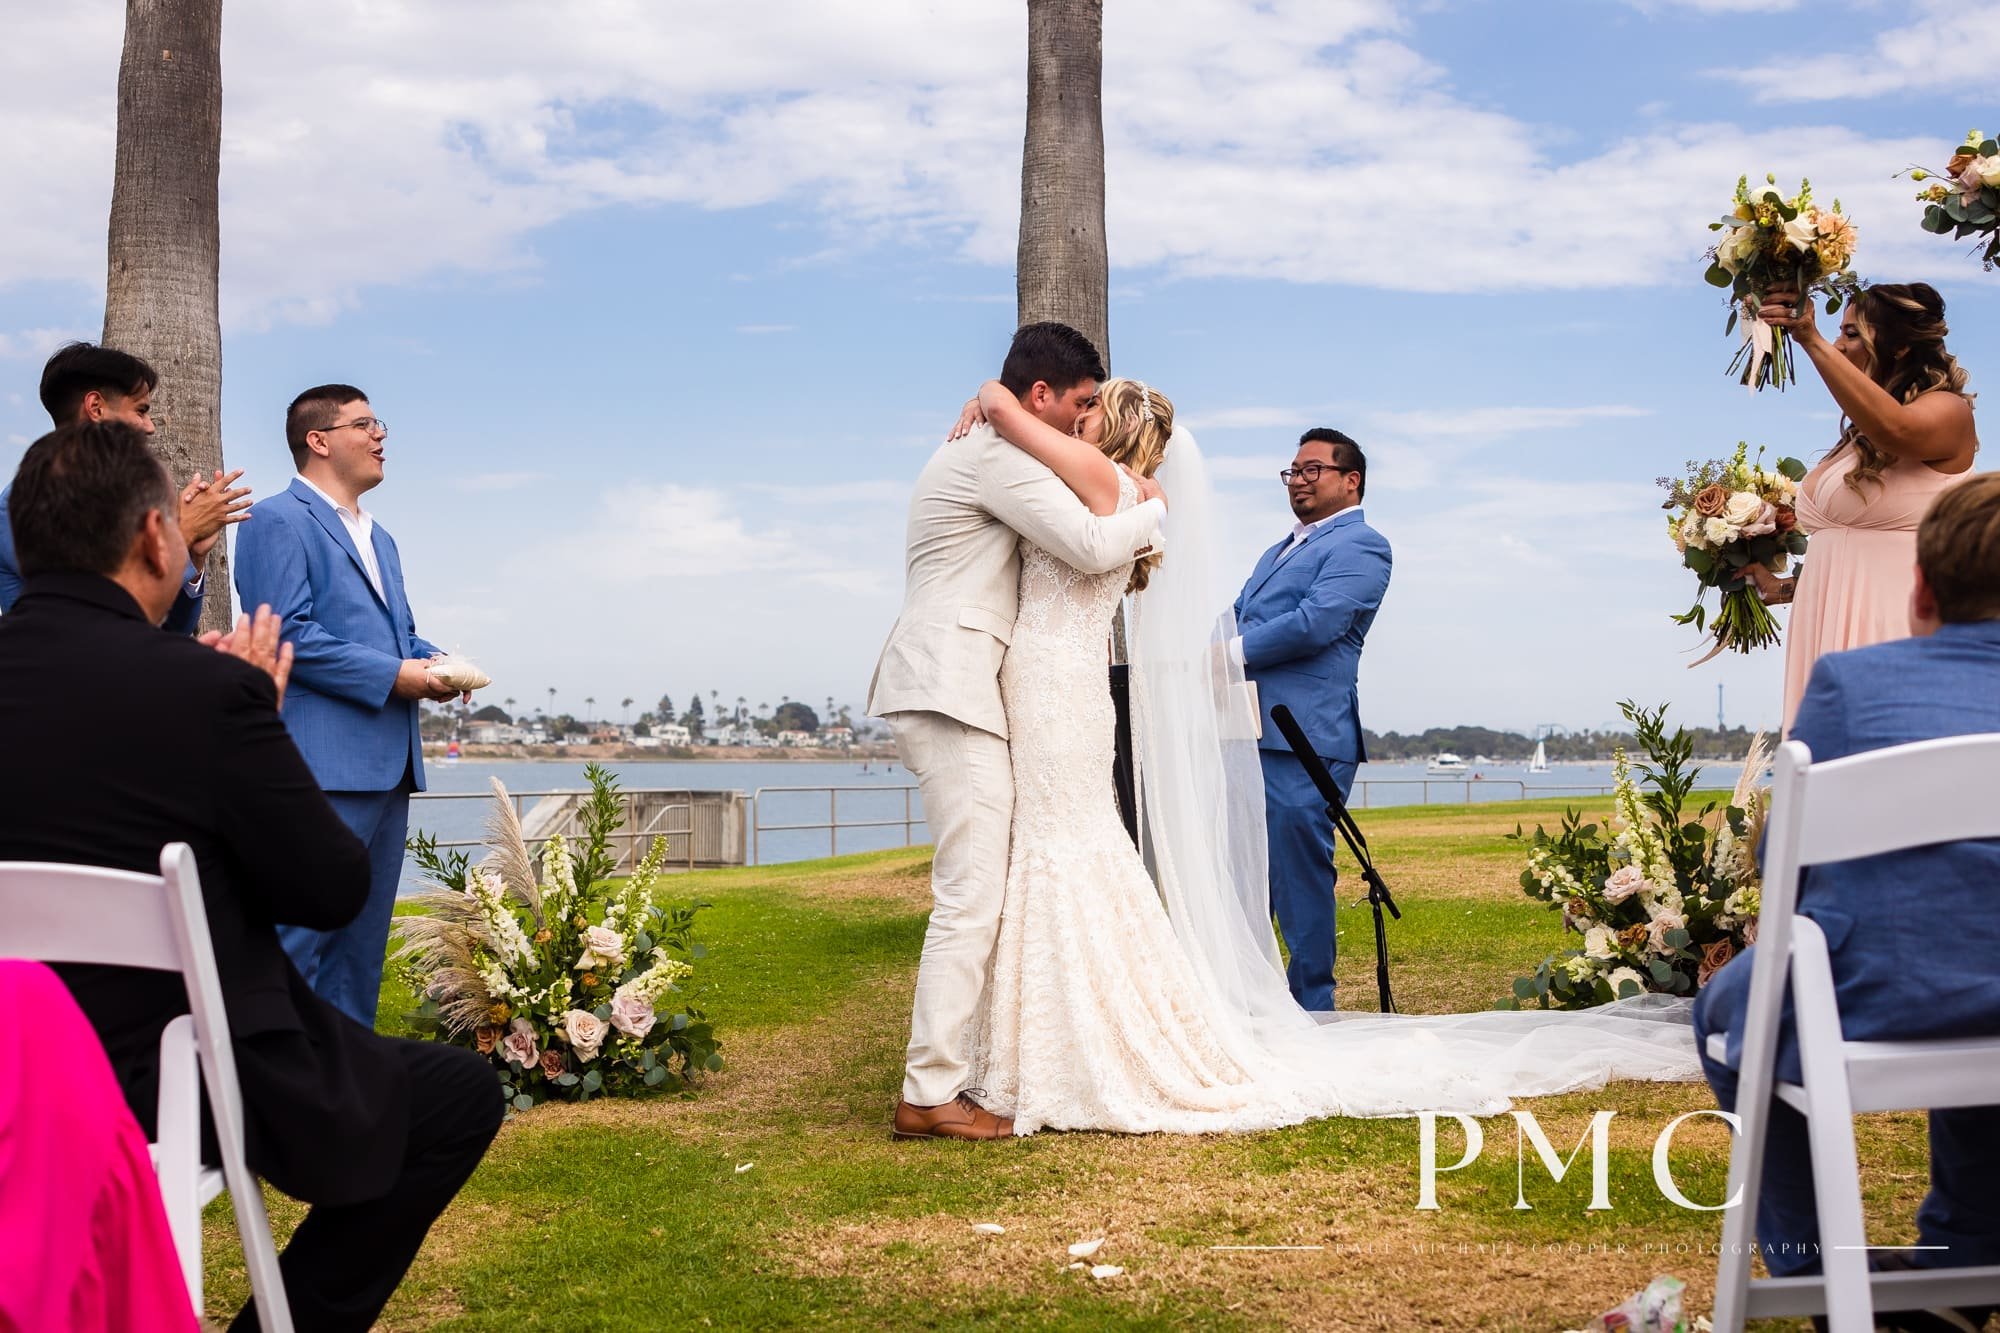 Tower Beach Club - Mission Bay Wedding - Best San Diego Wedding Photographer-19.jpg